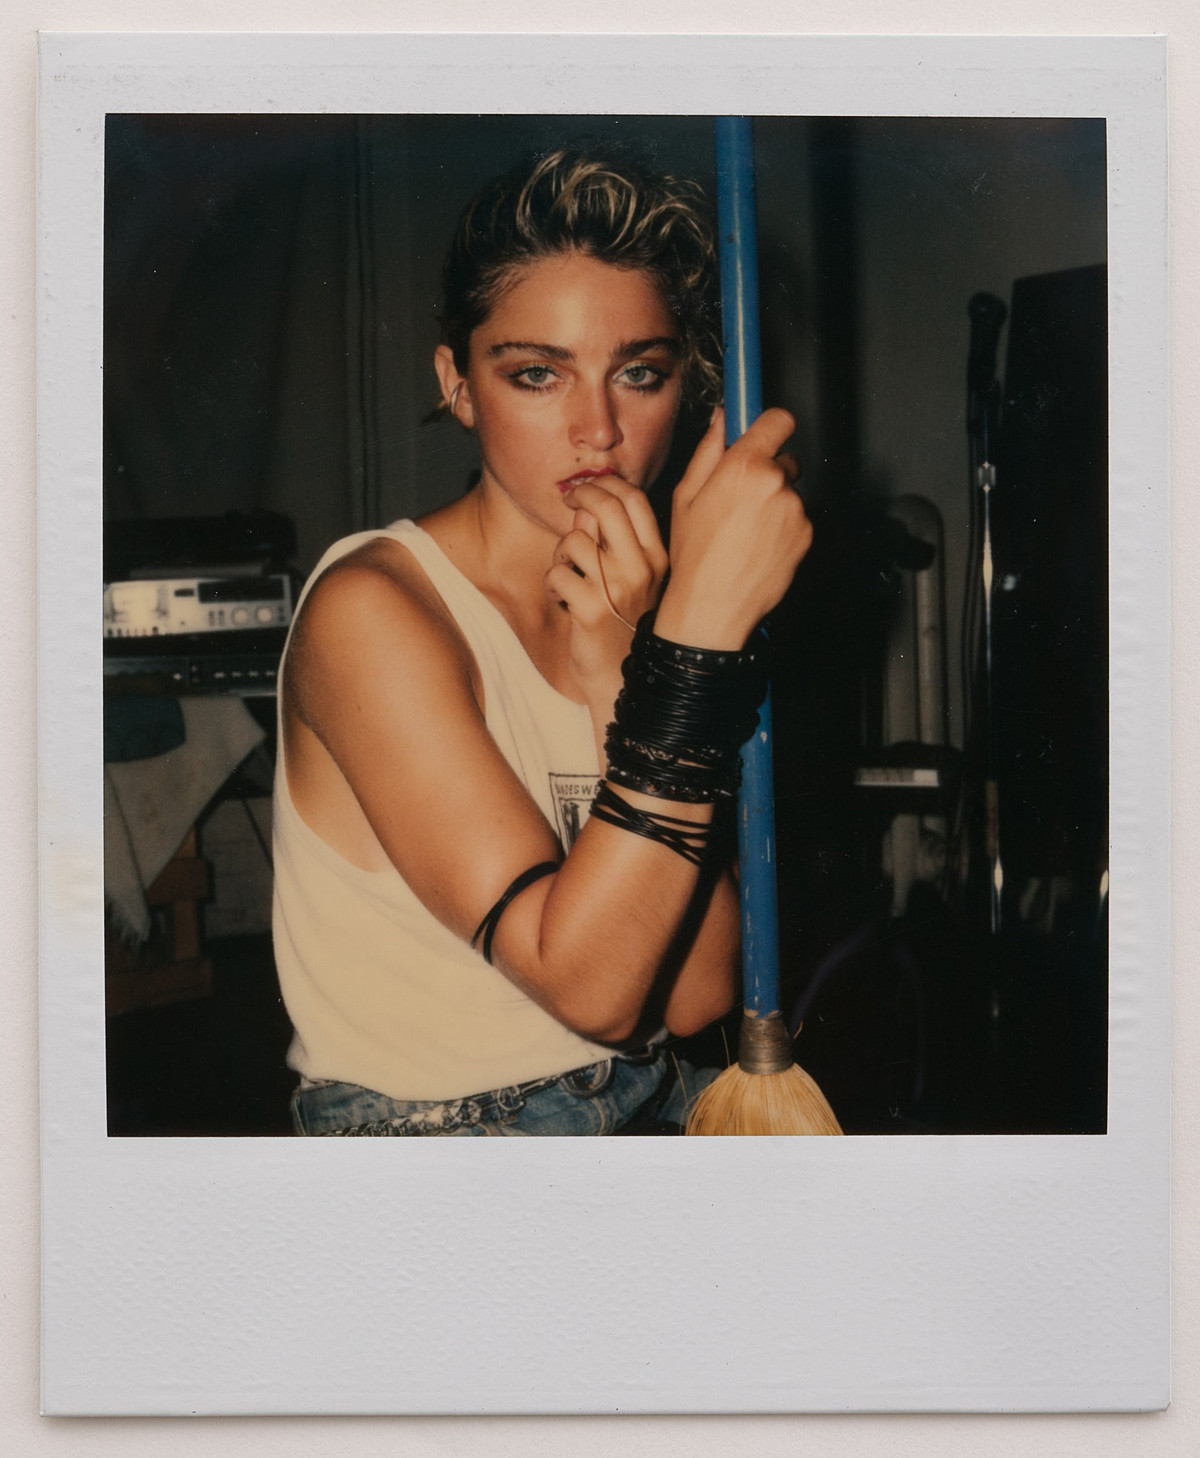 Мадонна на пороге славы в полароидных фотографиях 1983 года Ричарда Кормана 14